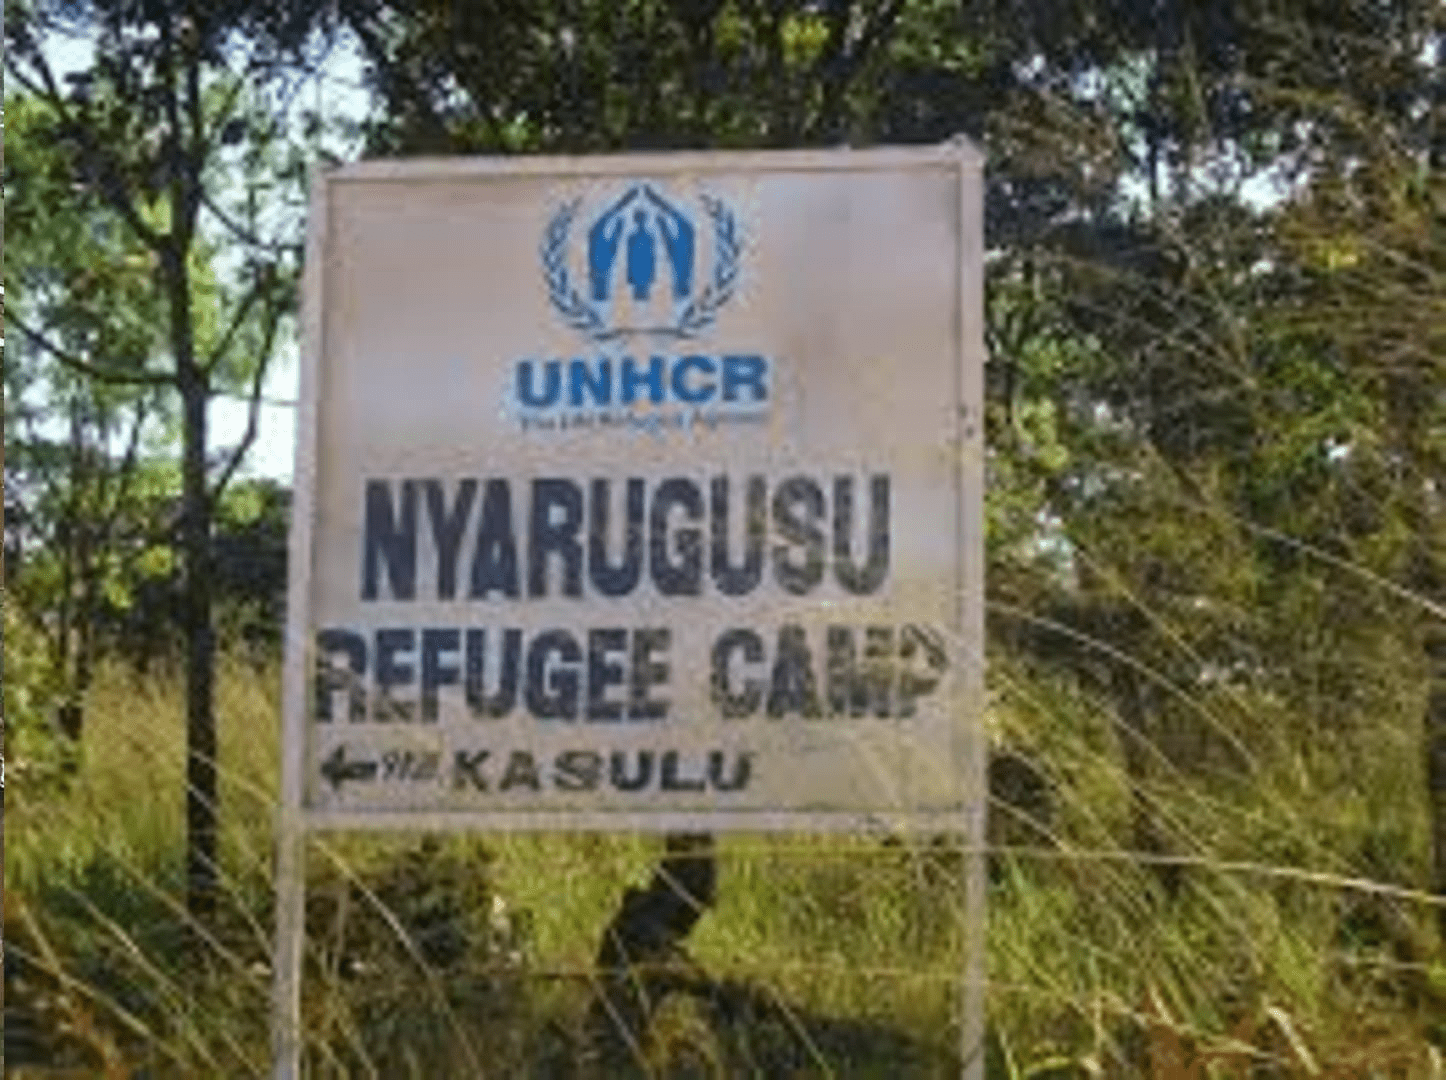 L’étau se resserre de plus en plus autour des réfugiés burundais du camp Nyarugusu